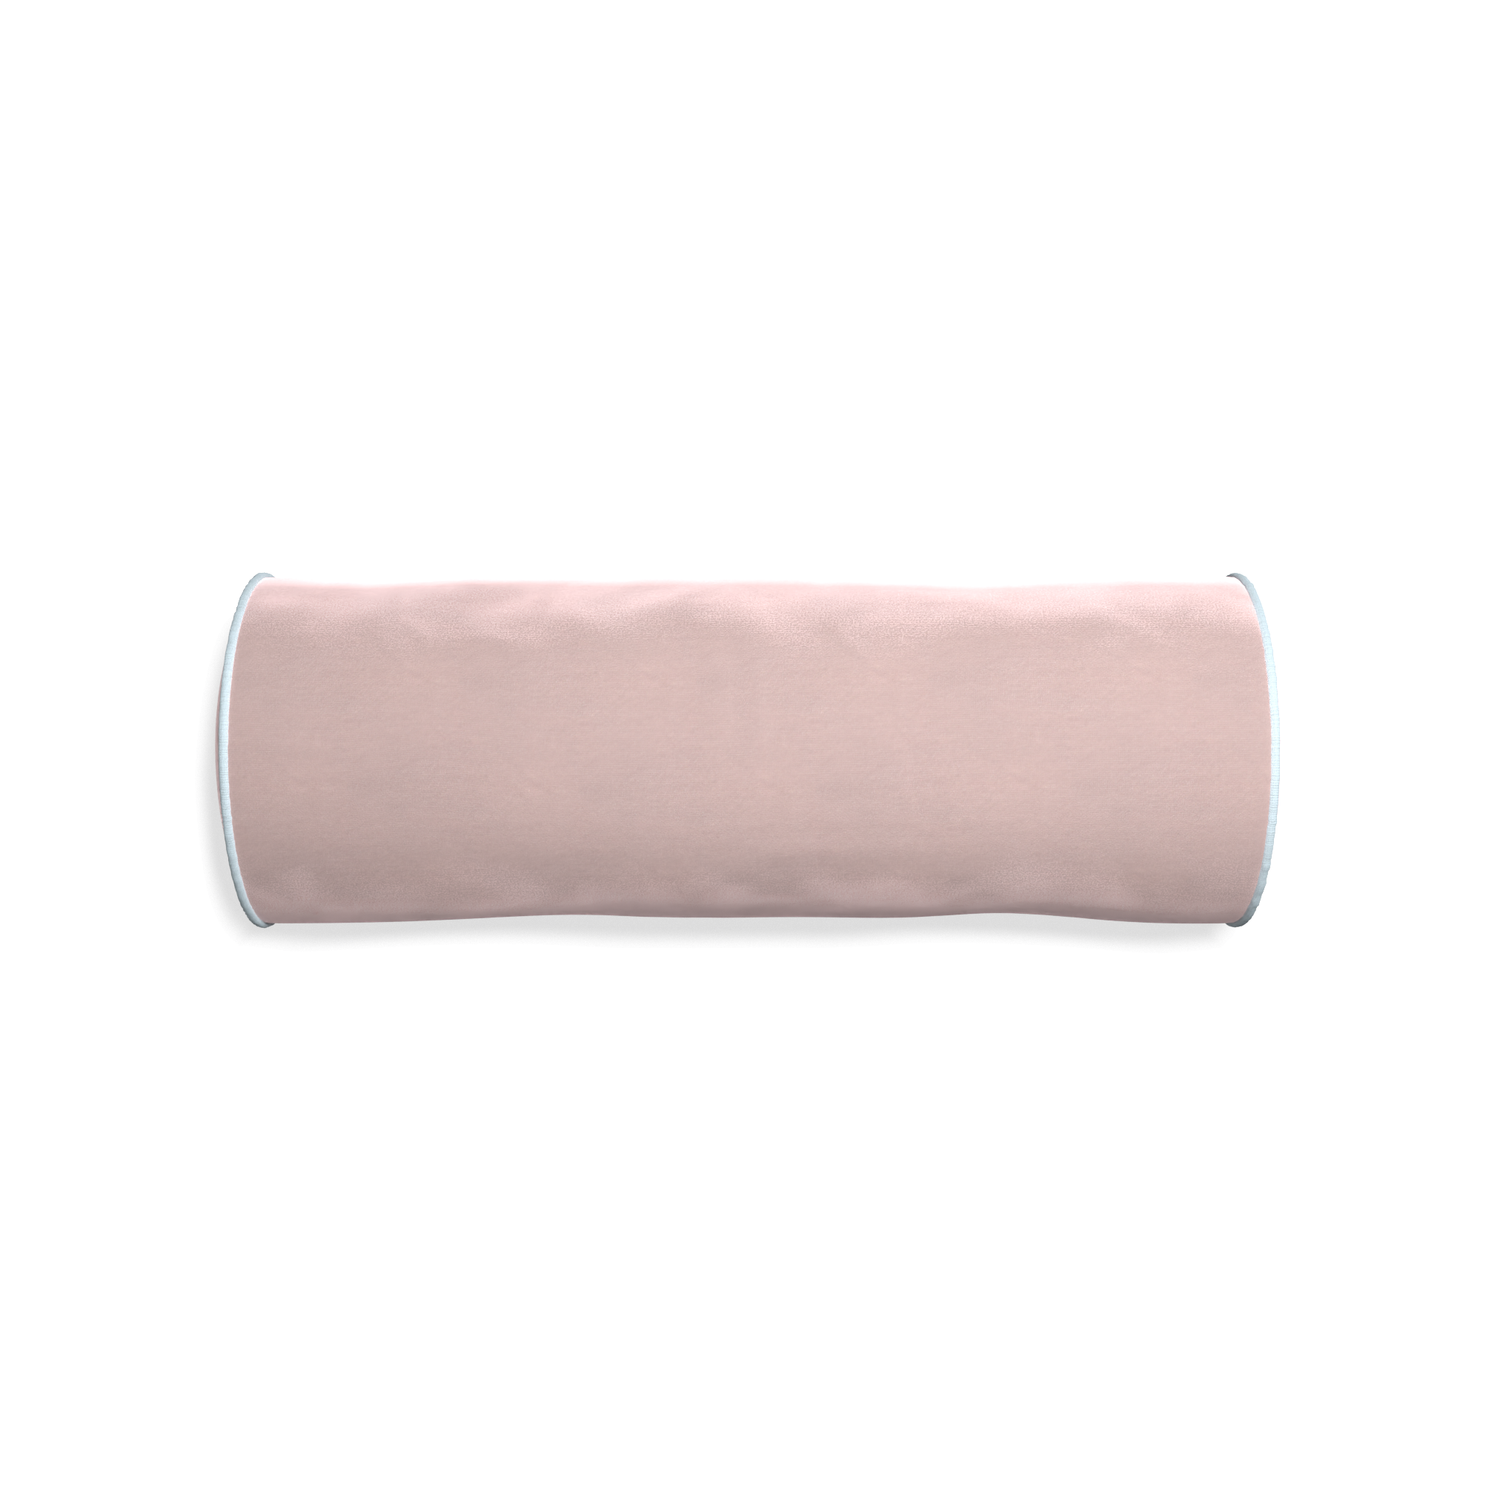 Bolster rose velvet custom pillow with powder piping on white background